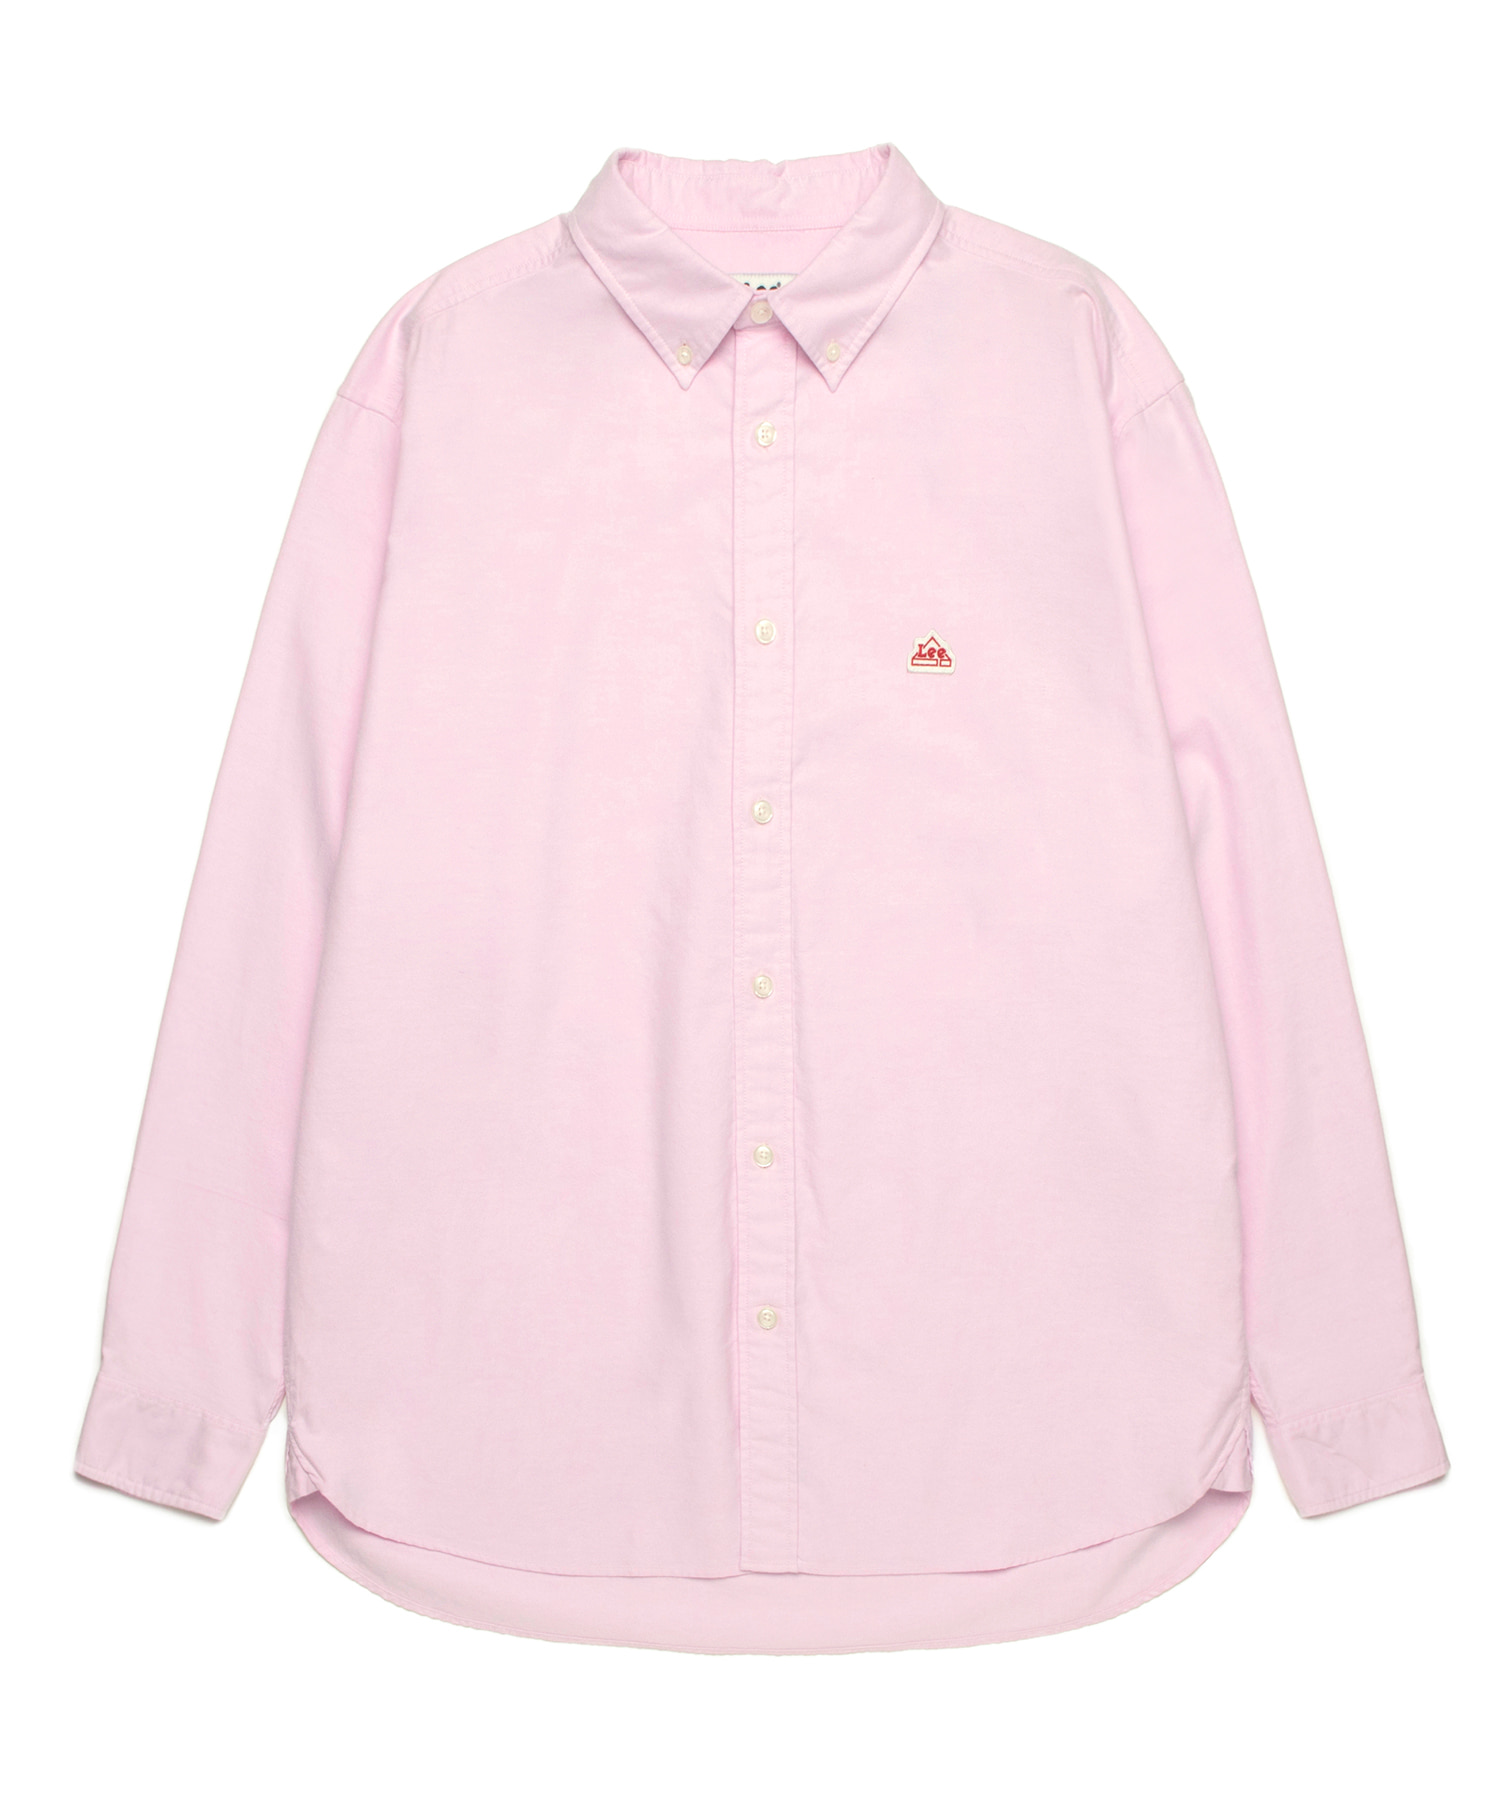 옥스포드 오버핏 셔츠 핑크